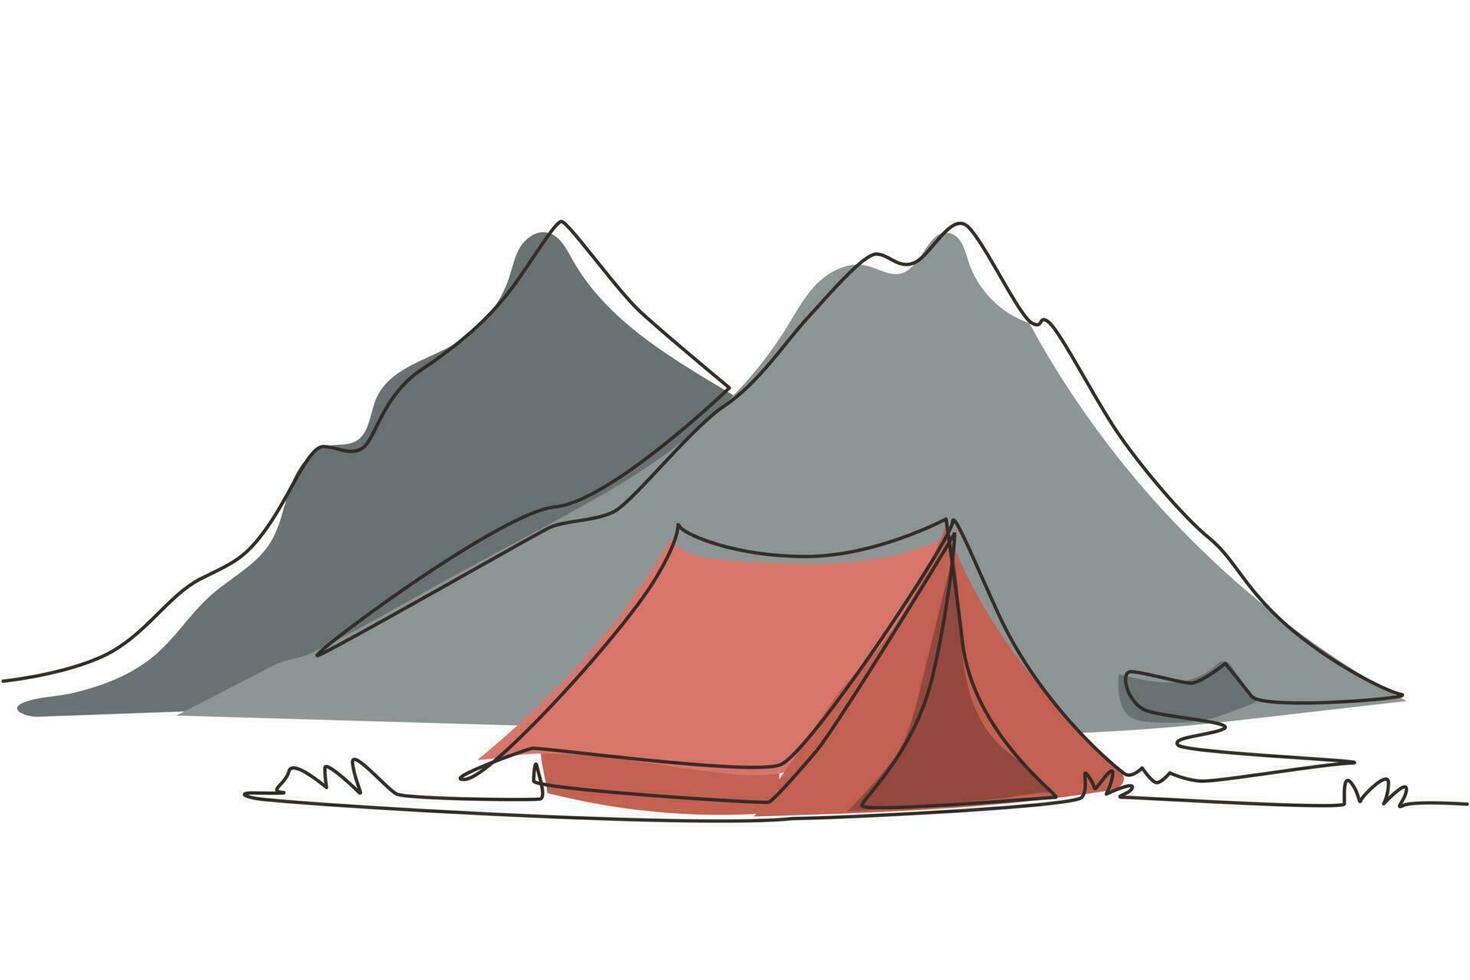 singola linea di disegno avventura campeggio paesaggio notturno. tenda, campeggio, pineta e montagne rocciose. sport, escursionismo, campeggio, attività ricreative all'aperto. illustrazione vettoriale di disegno a linea continua